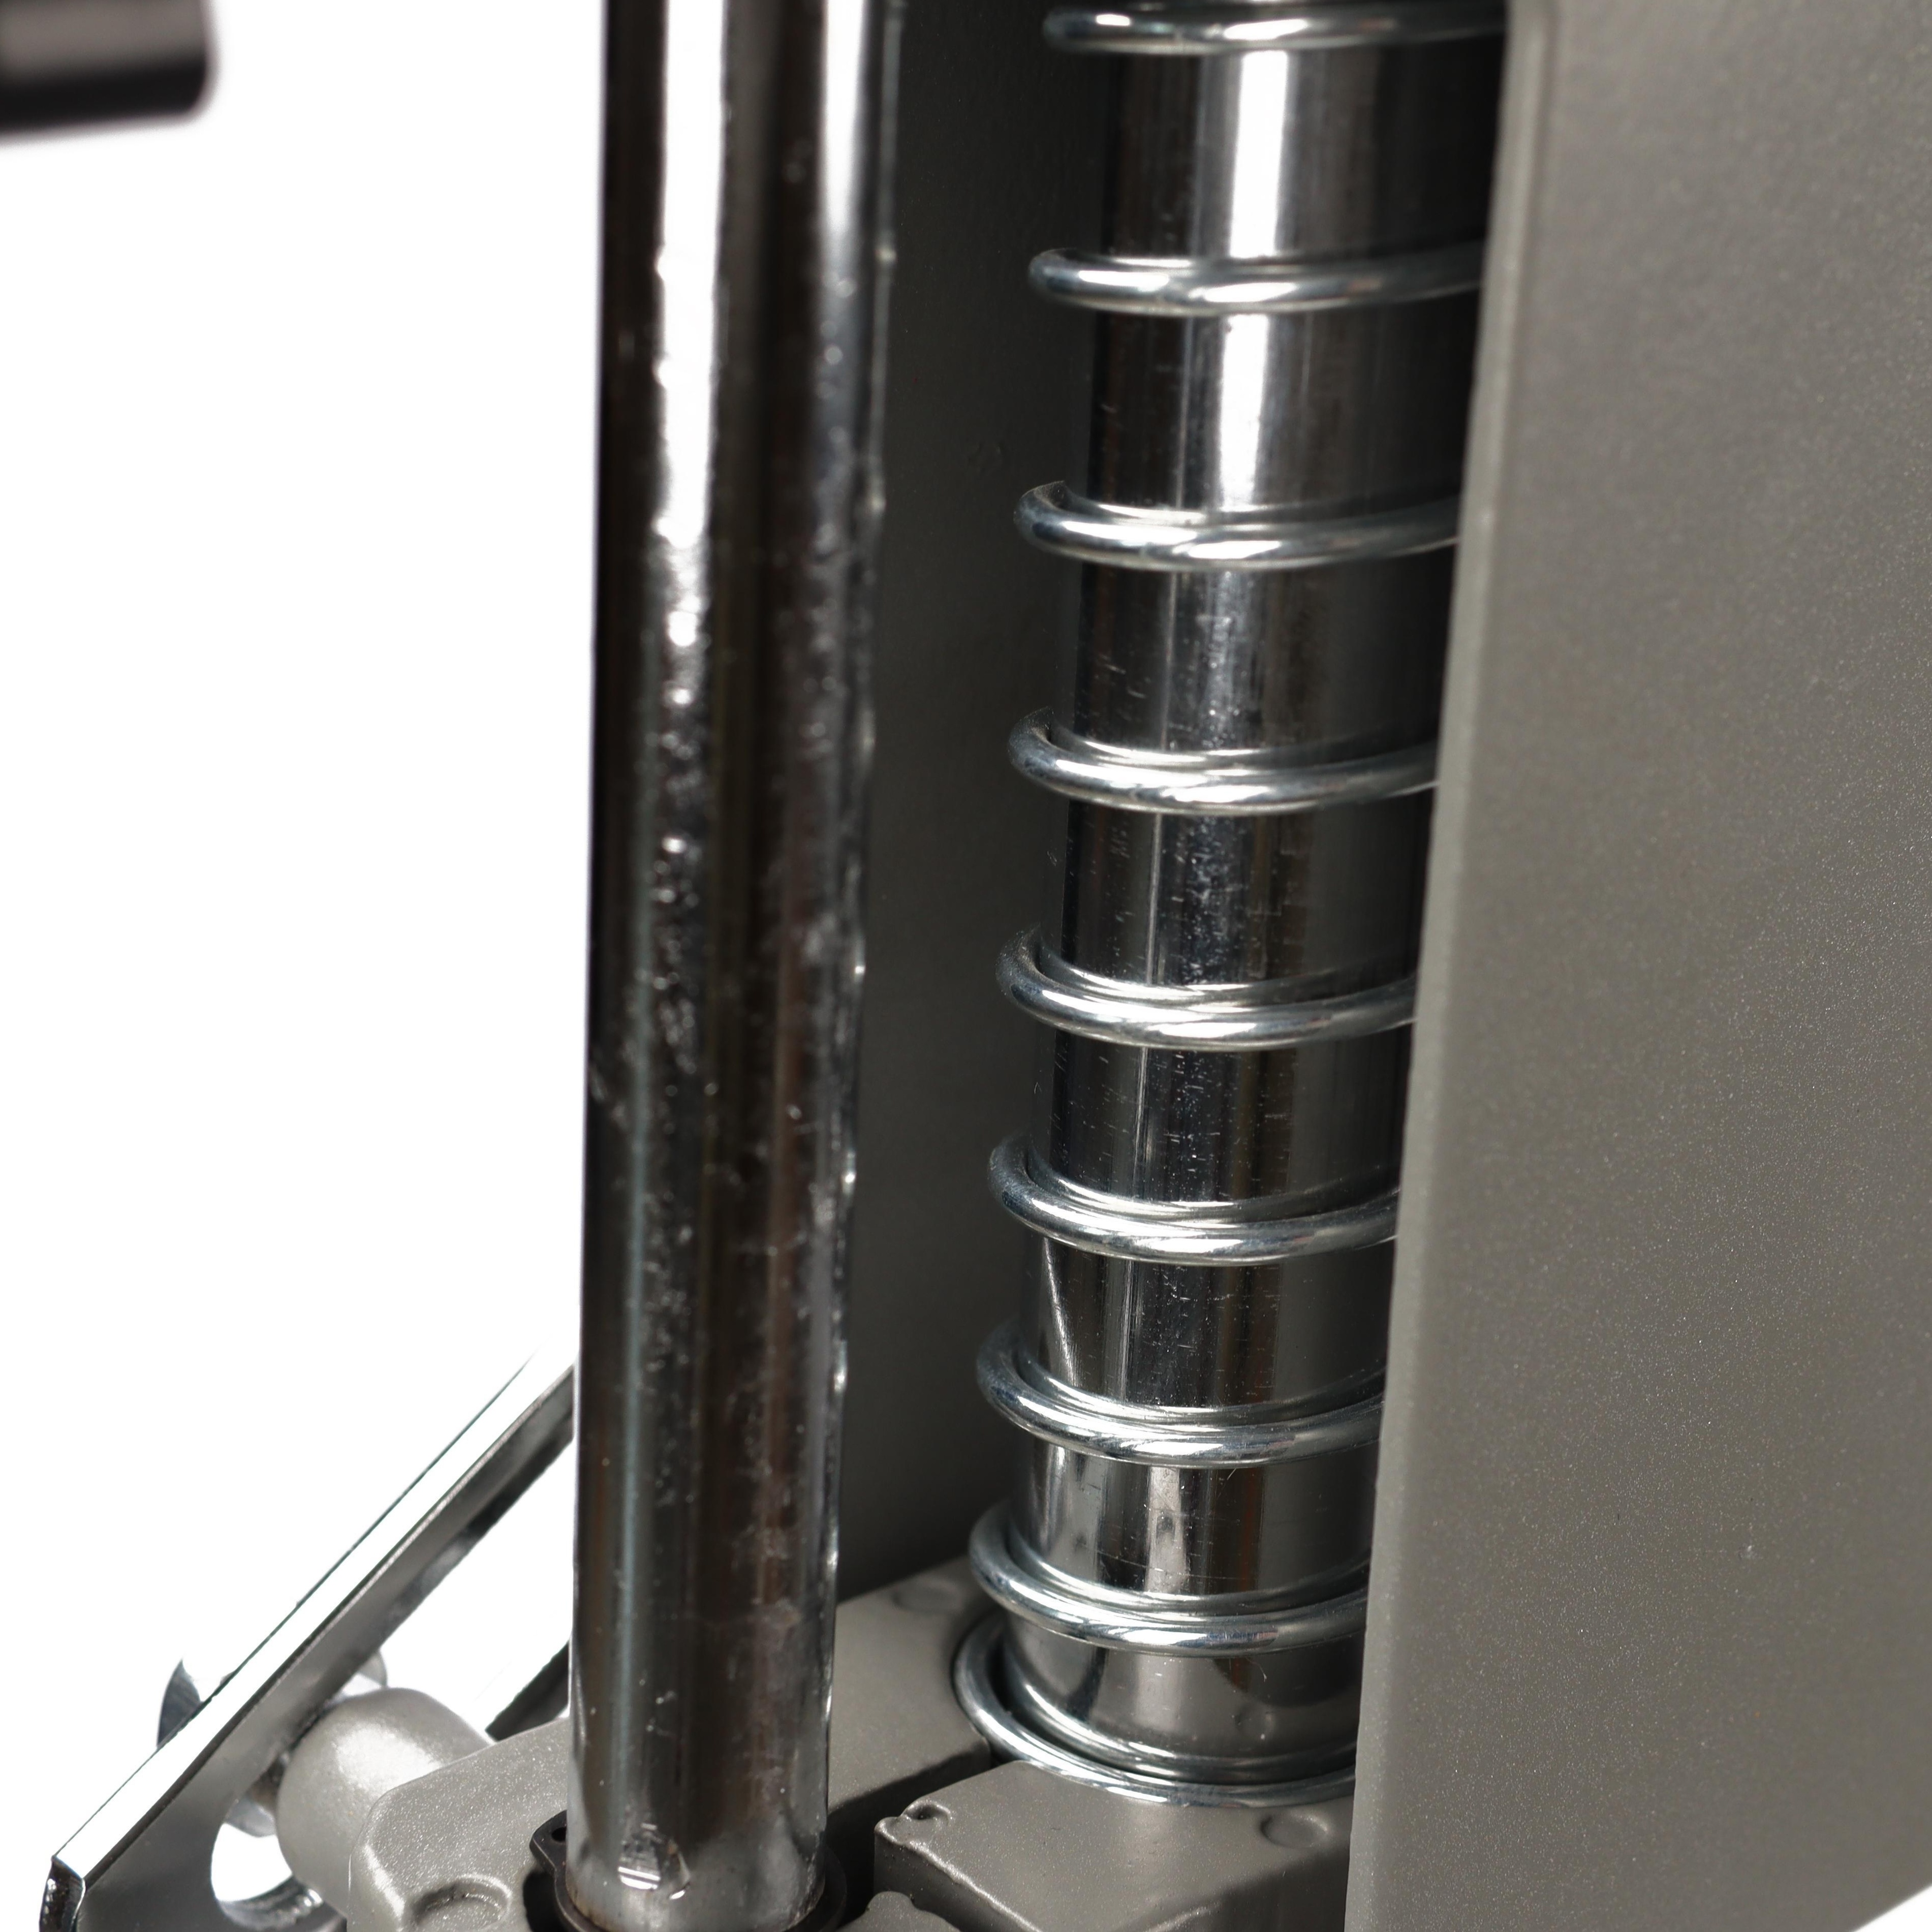  MARHD Soporte para taladro de presión, estable y preciso, mesa  de prensa de taladro giratorio de 0 a 90° en altura ajustable, taladro de  banco, operación simple para taladrar, cortar, moler (